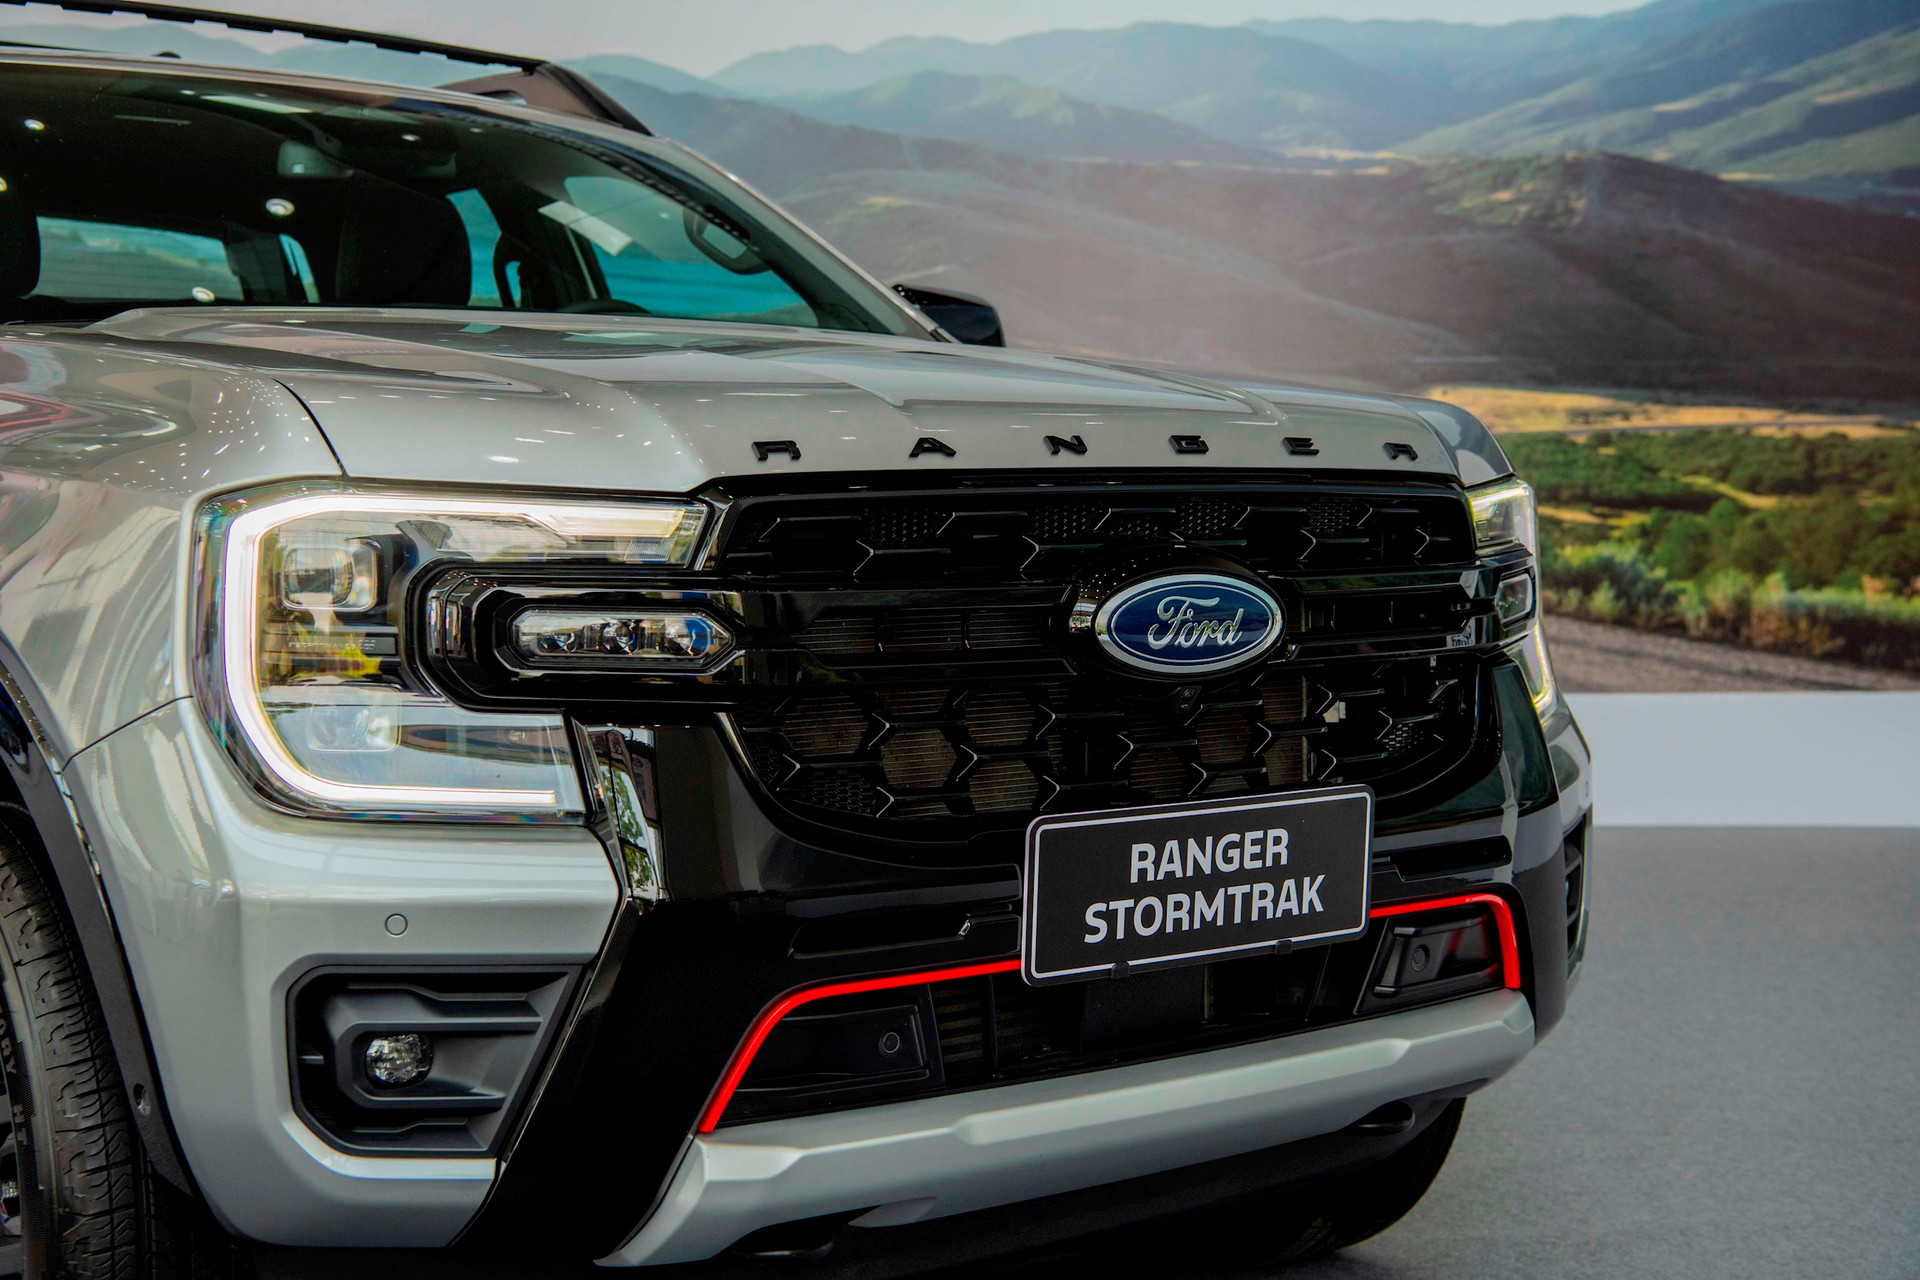 Định giá 1.039 tỷ, Ford Ranger Stormtrak có gì cho khách Việt?- Ảnh 5.